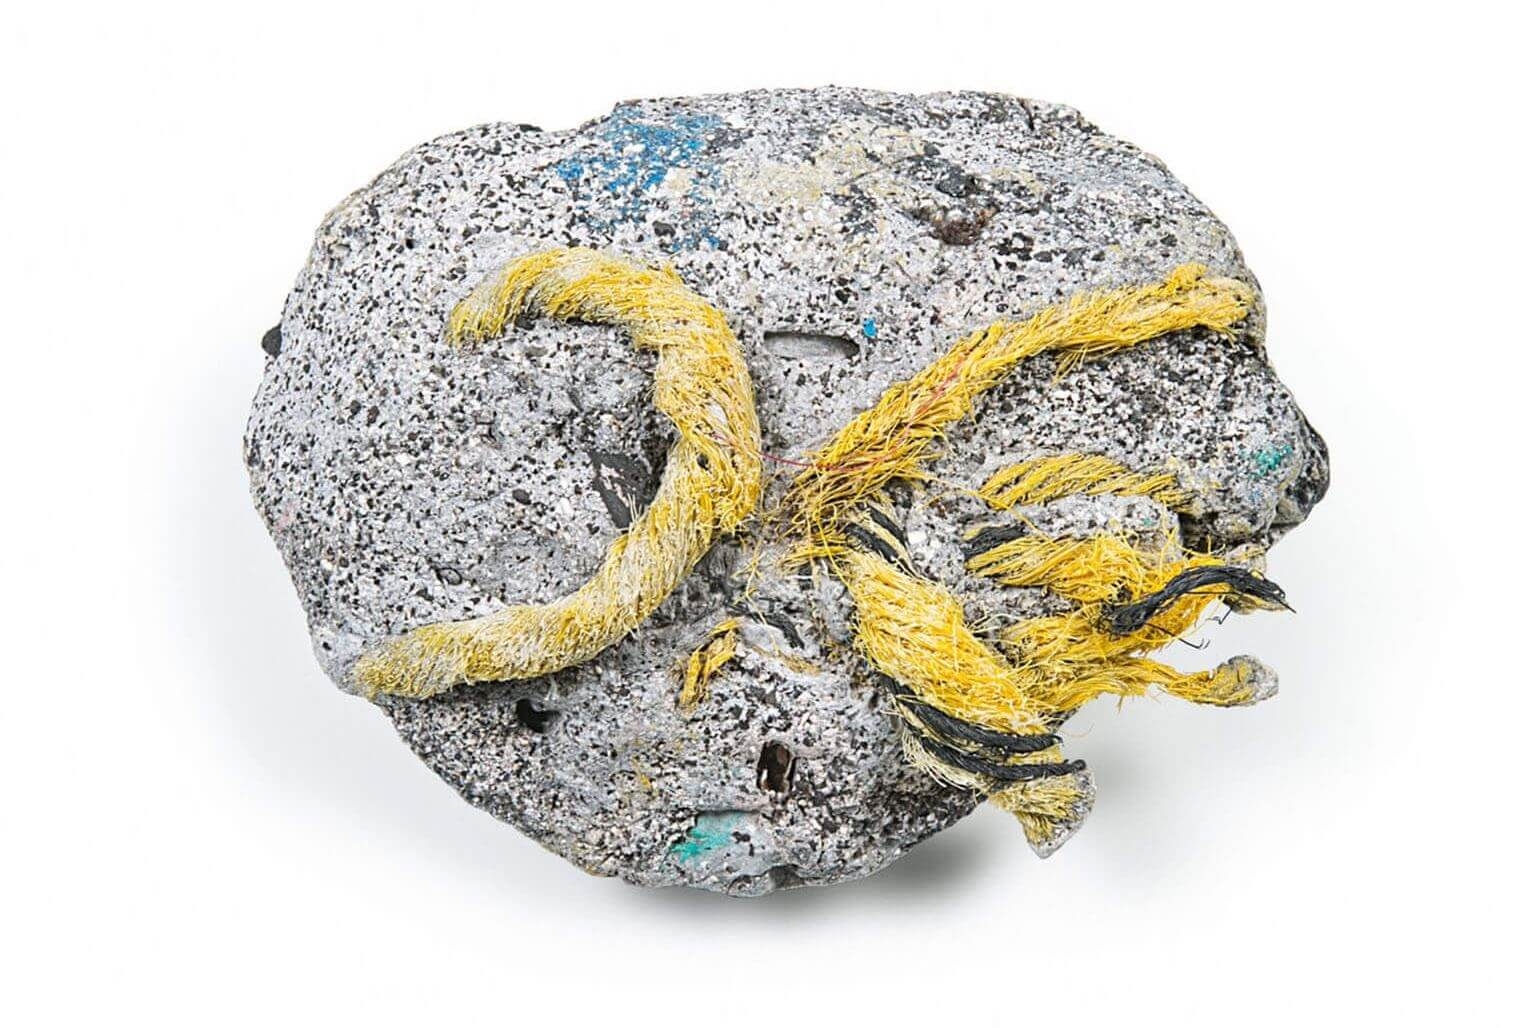 在夏威夷卡米羅岬海灘發現的「膠礫岩」，這是塑膠碎片熔化後（或許是營火造成），與沙子、岩石、貝殼及珊瑚融合而成的一種岩石。地質學家認為這種岩石將標記我們對地球的影響，而且存在時間會很長久。JEFF ELSTONE IDENTIFIED BY CHARLES MOORE, PATRICIA CORCORAN, AND KELLY JAZVAC